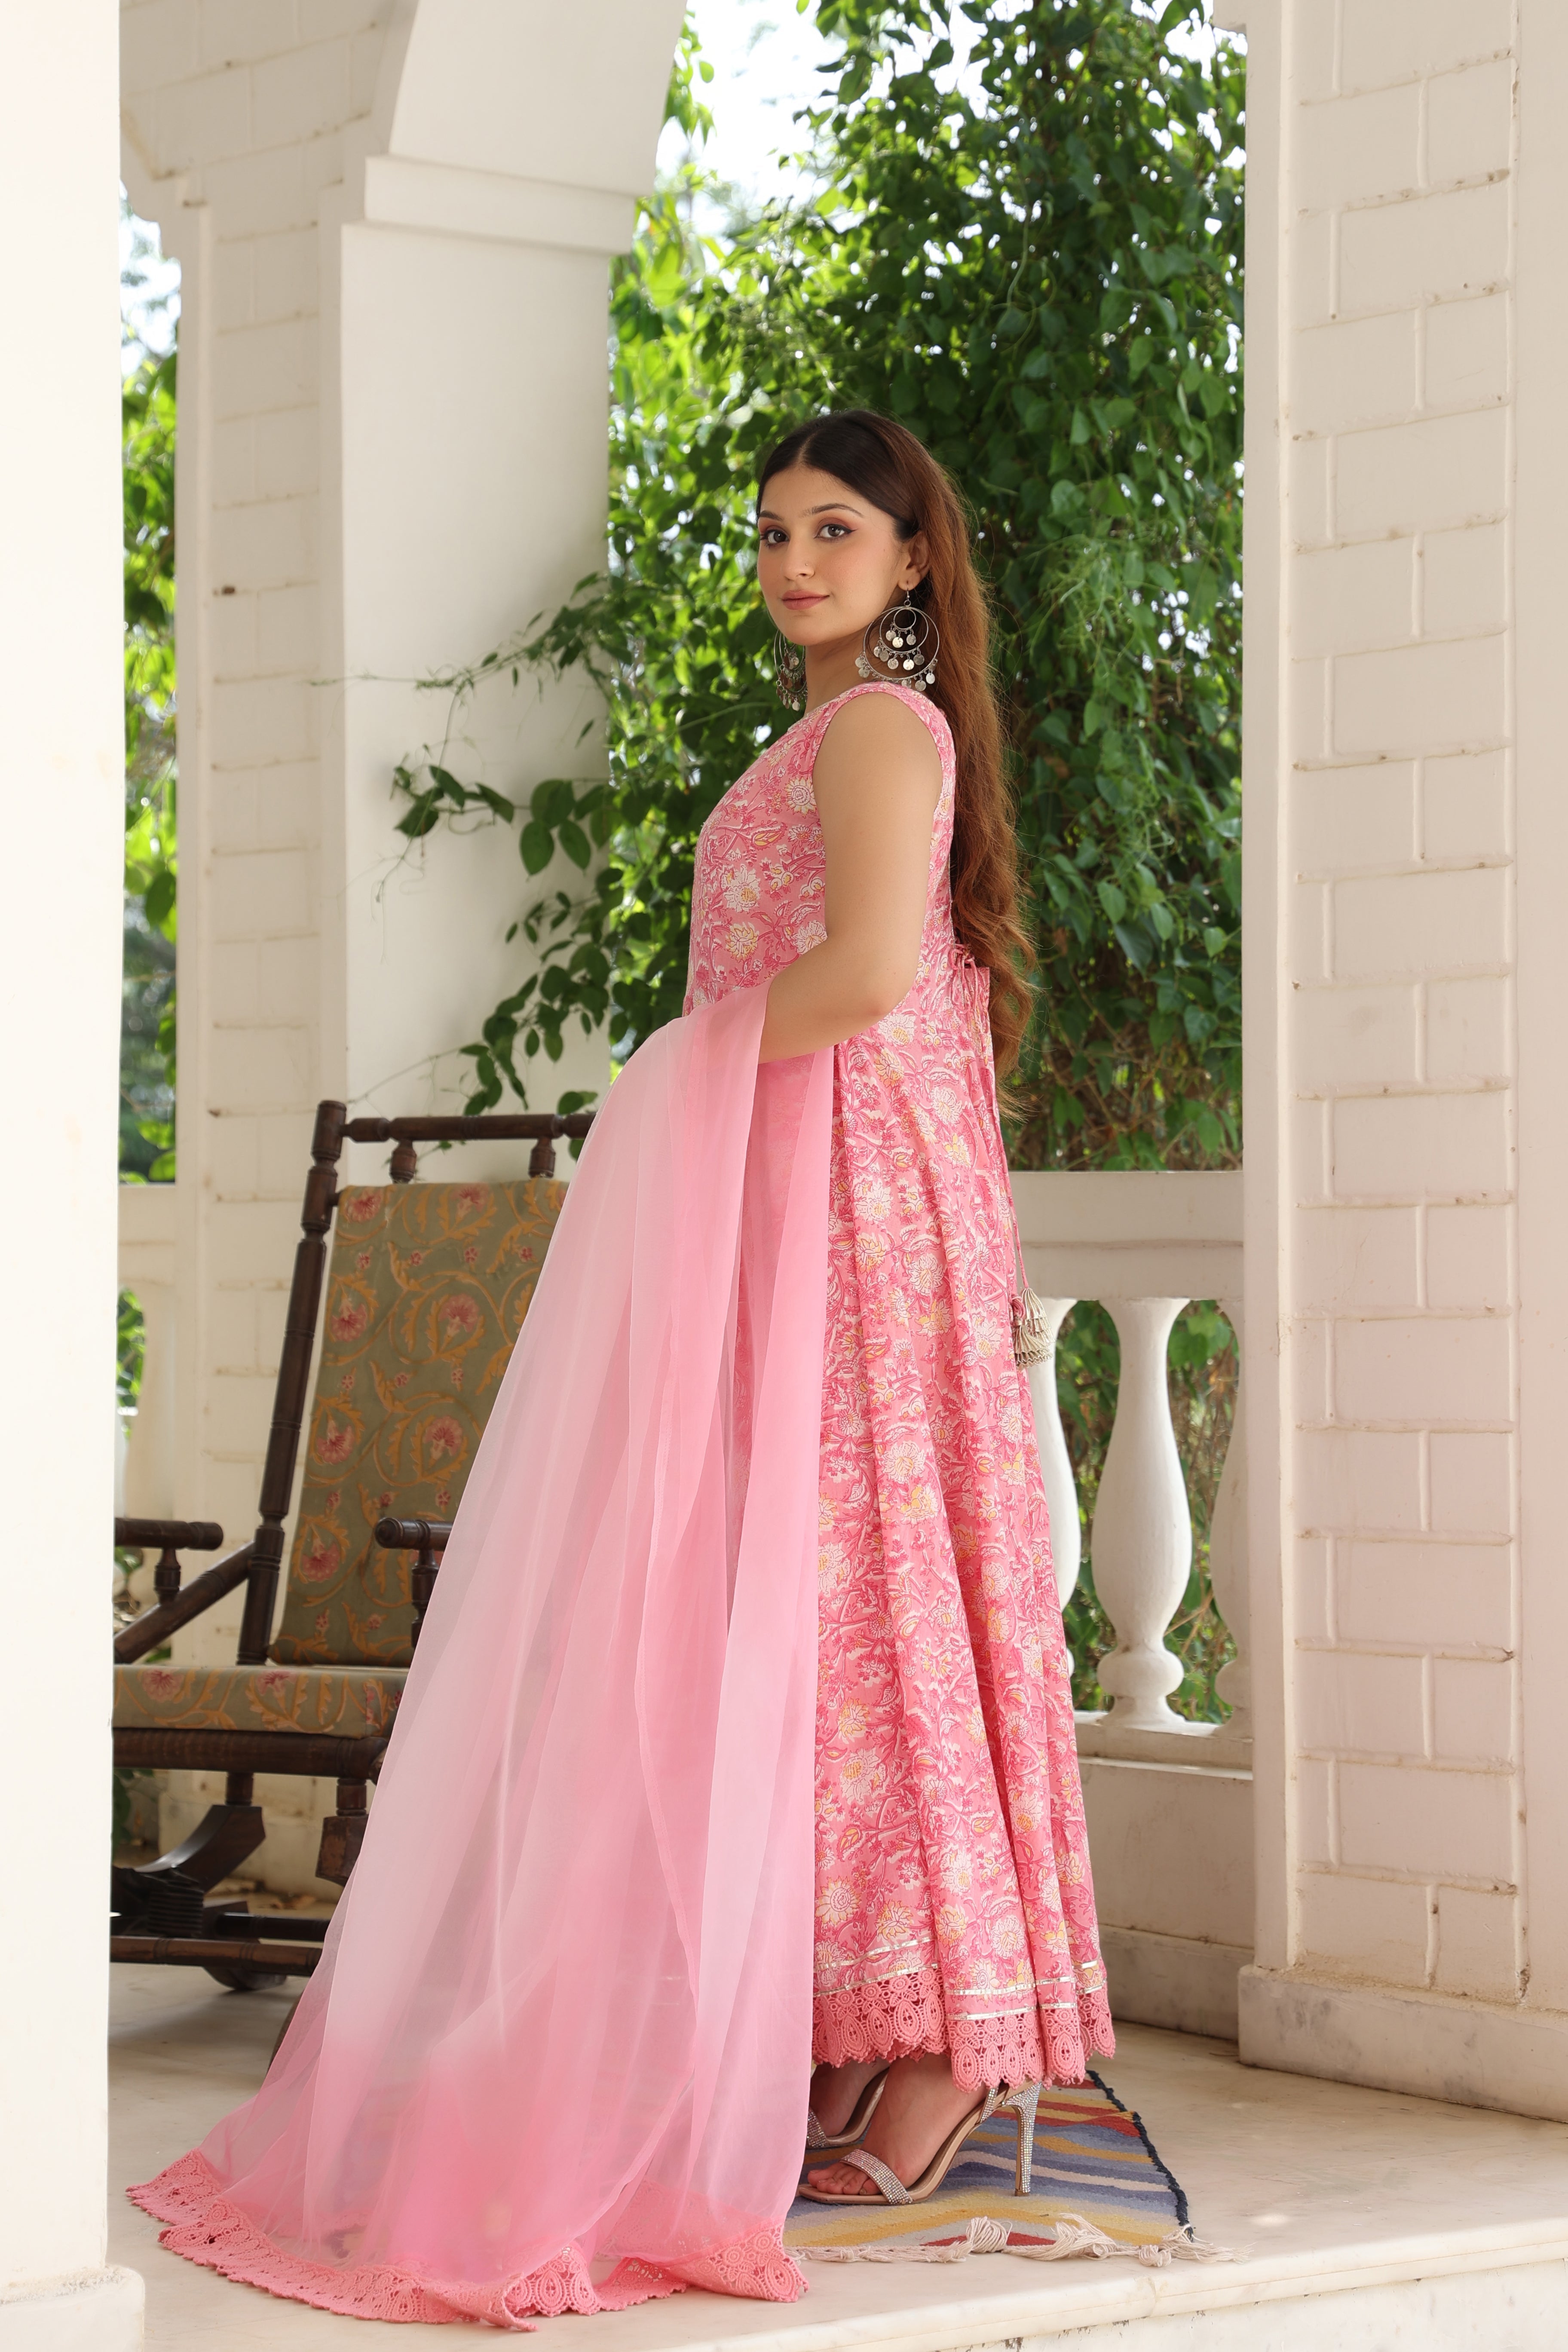 Pink Embroidered Anarkali And Dupatta | Backless dress formal, Formal  dresses long, Lehenga designs